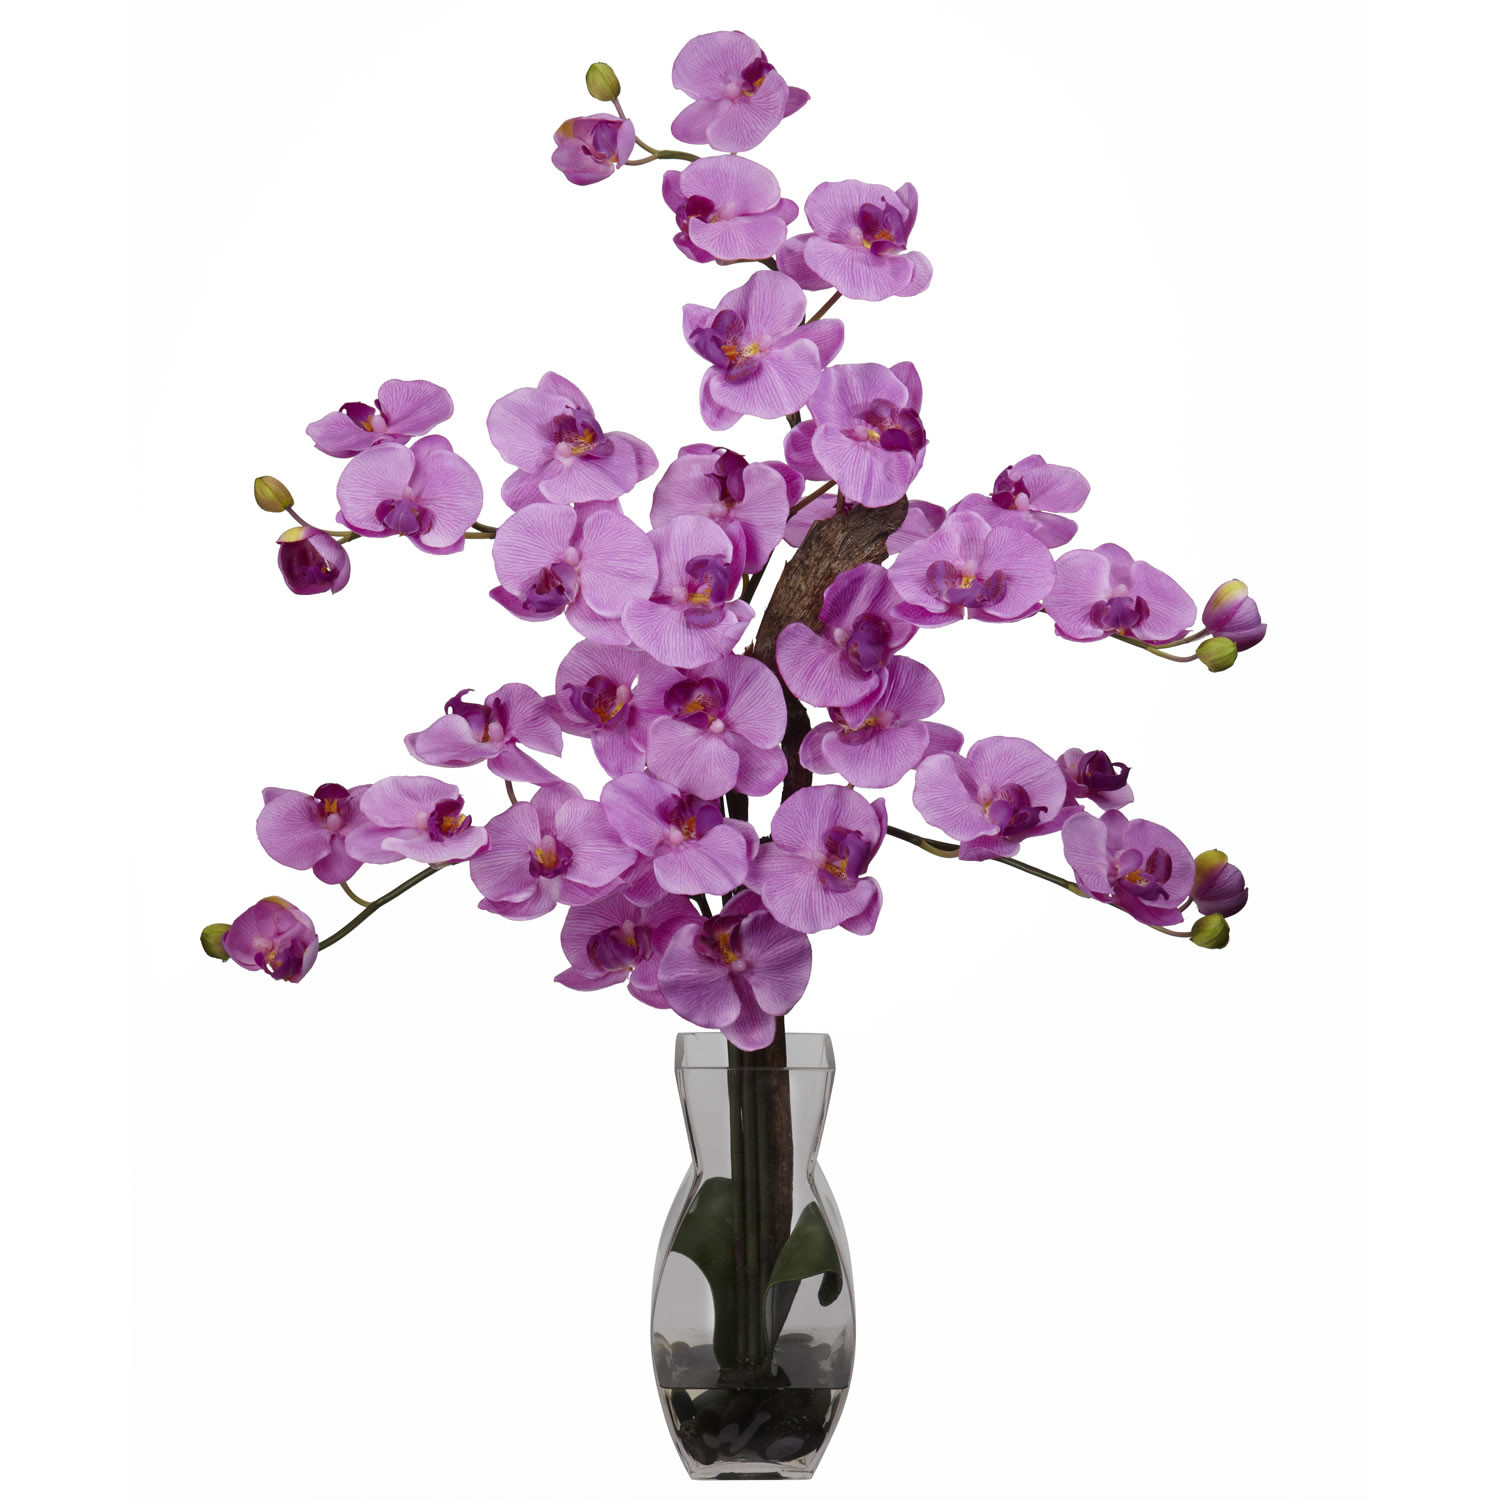 10 Lovely Lavender Vase 2024 free download lavender vase of purple silk flowers in vase flowers healthy throughout phalaenopsis w vase silk flower arrangement flowers gifts by lil